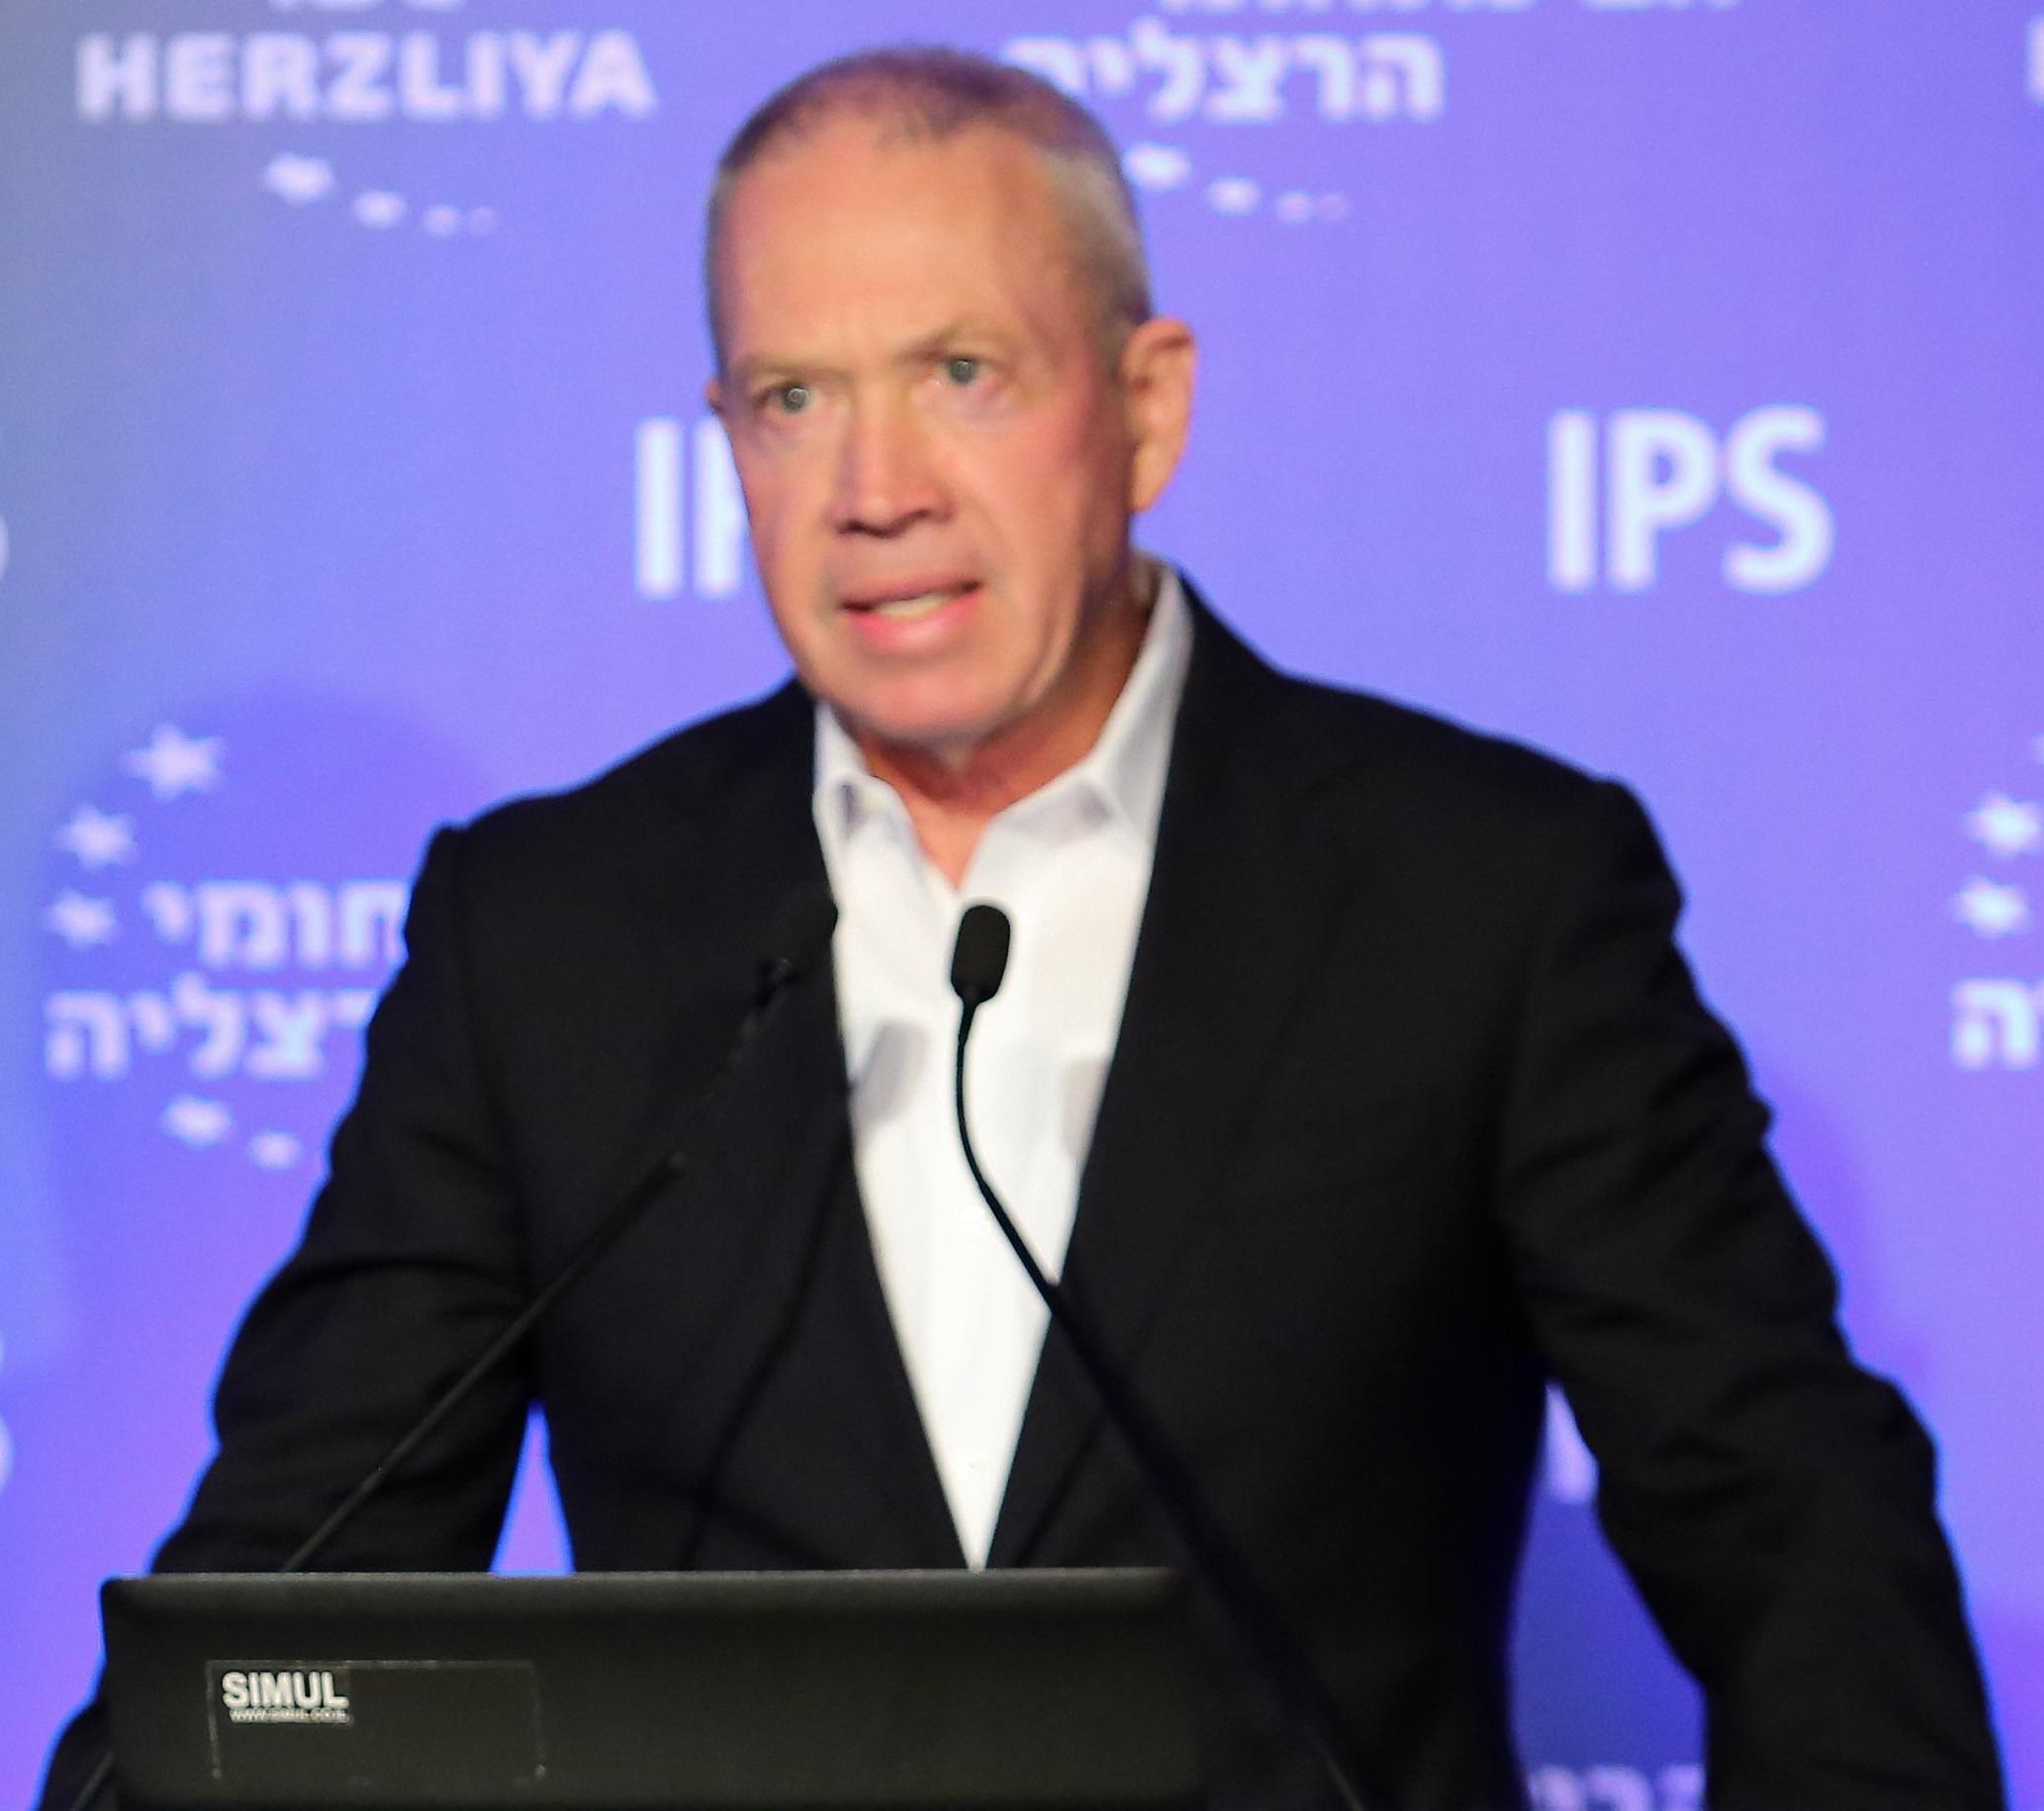 Israel's Defence Minister calls govt to halt 'judicial reforms' in big jolt to Netanyahu